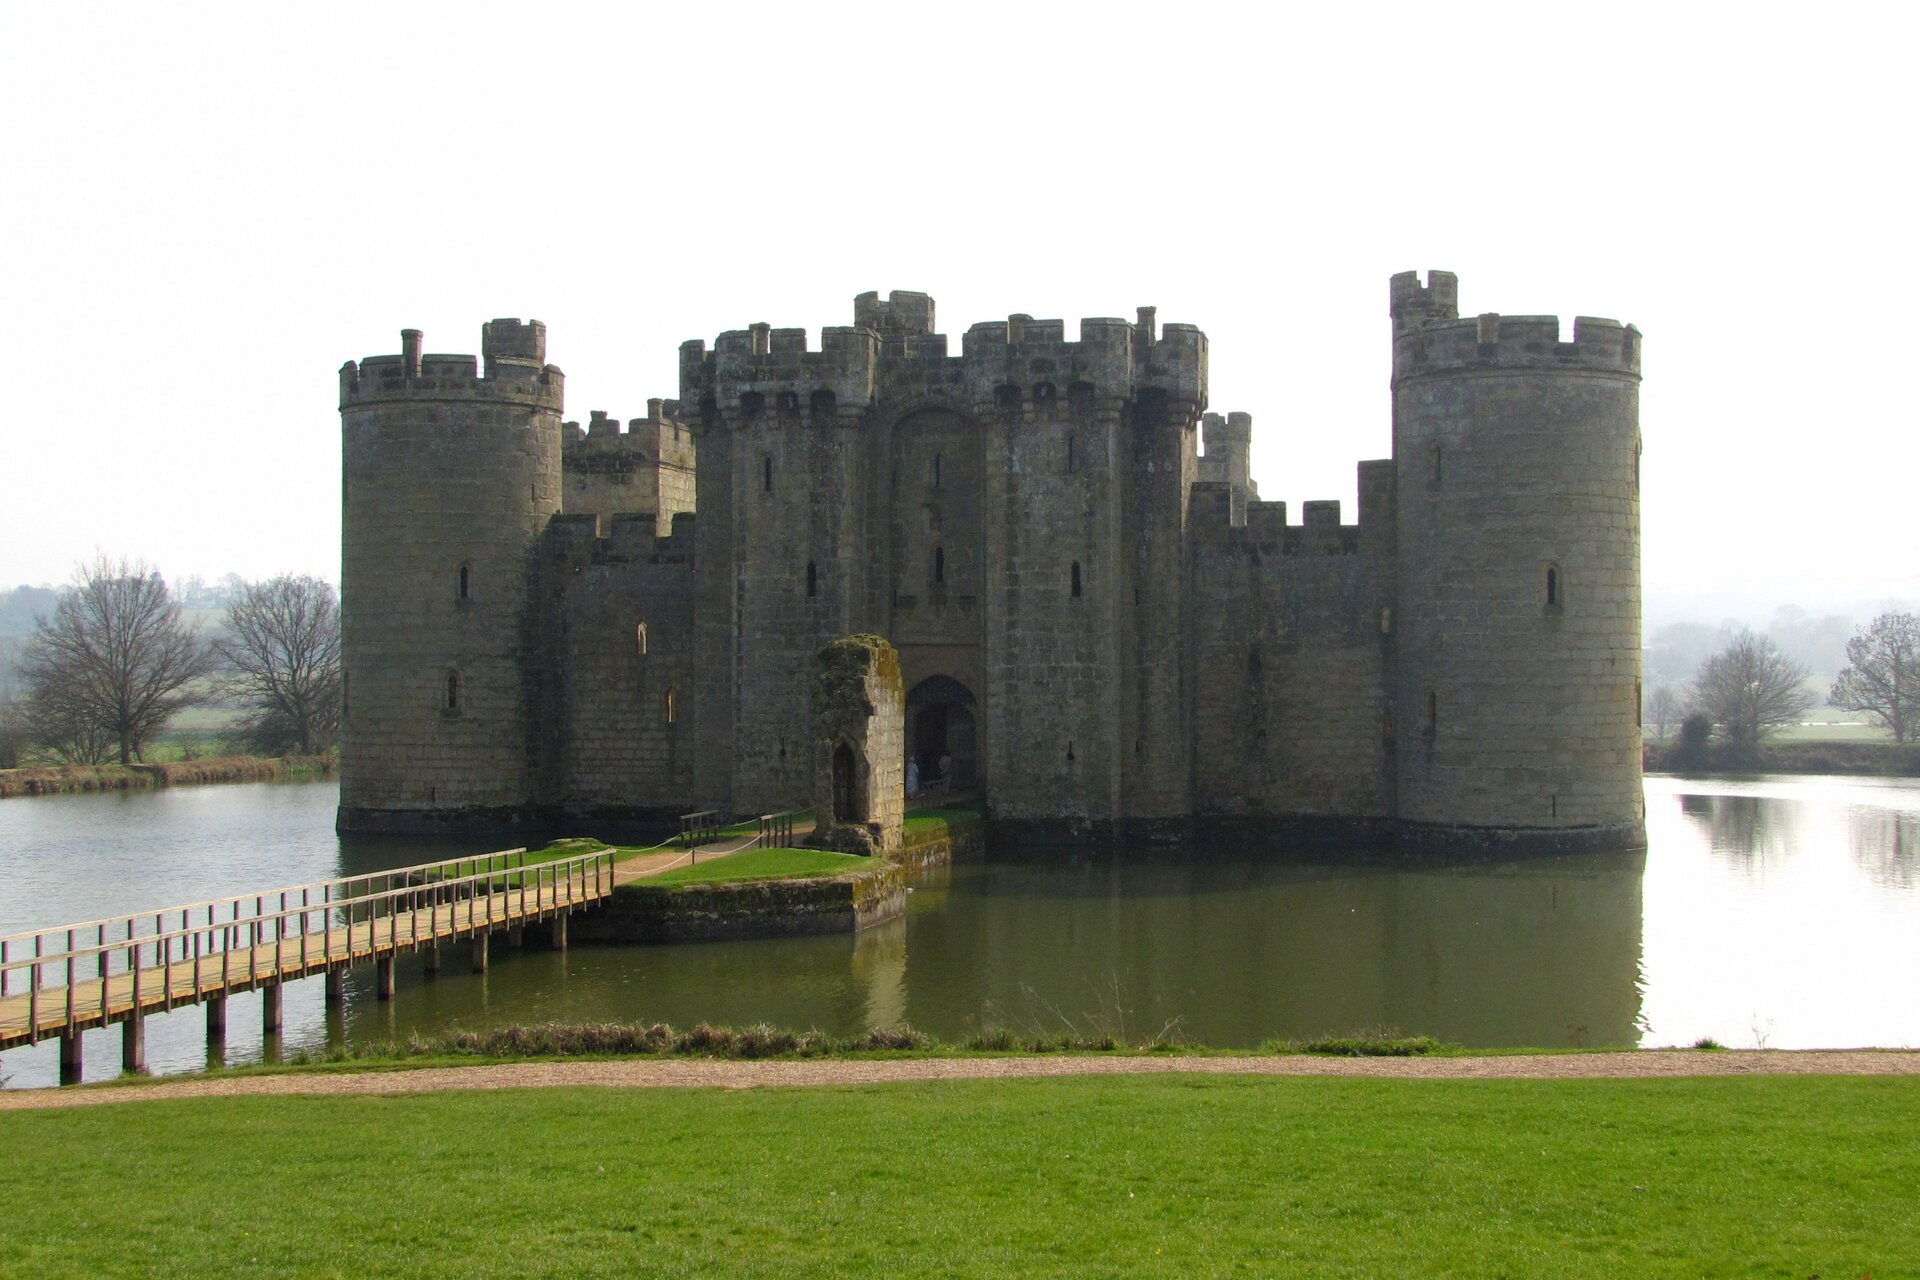 Zdjęcie przedstawia zamek. Zamek posiada grube i wysokie mury i wieże. Stoi na wyspie otoczonej wodą. Do zamku prowadzi most zawieszony nad wodą.